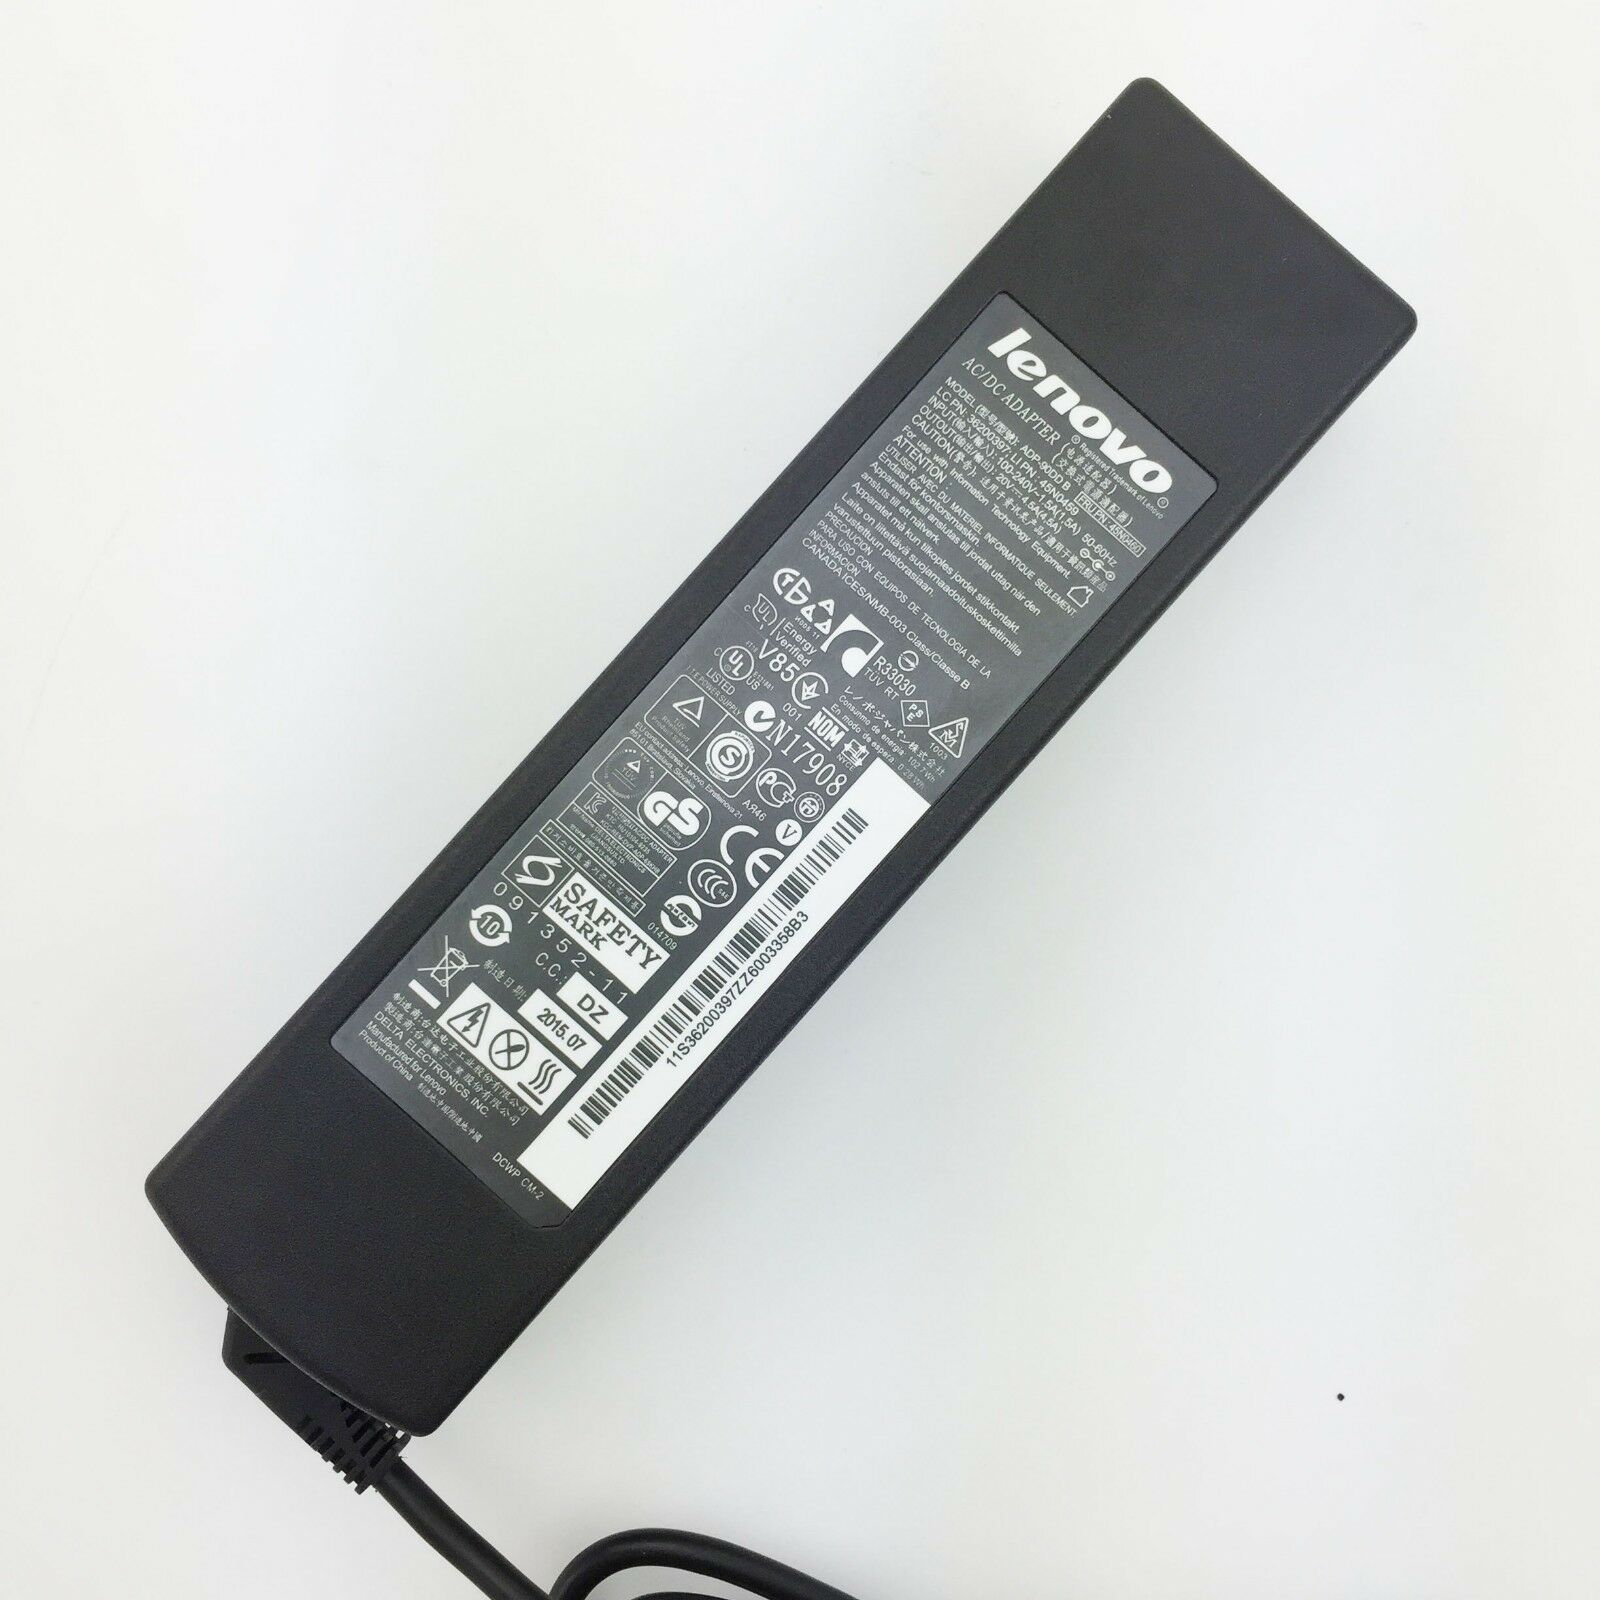 Lenovo 0B56116 36001646 adaptateur chargeur 20V 4.5A 90W alimentation originale pour Lenovo Z460 G230 K23 séries